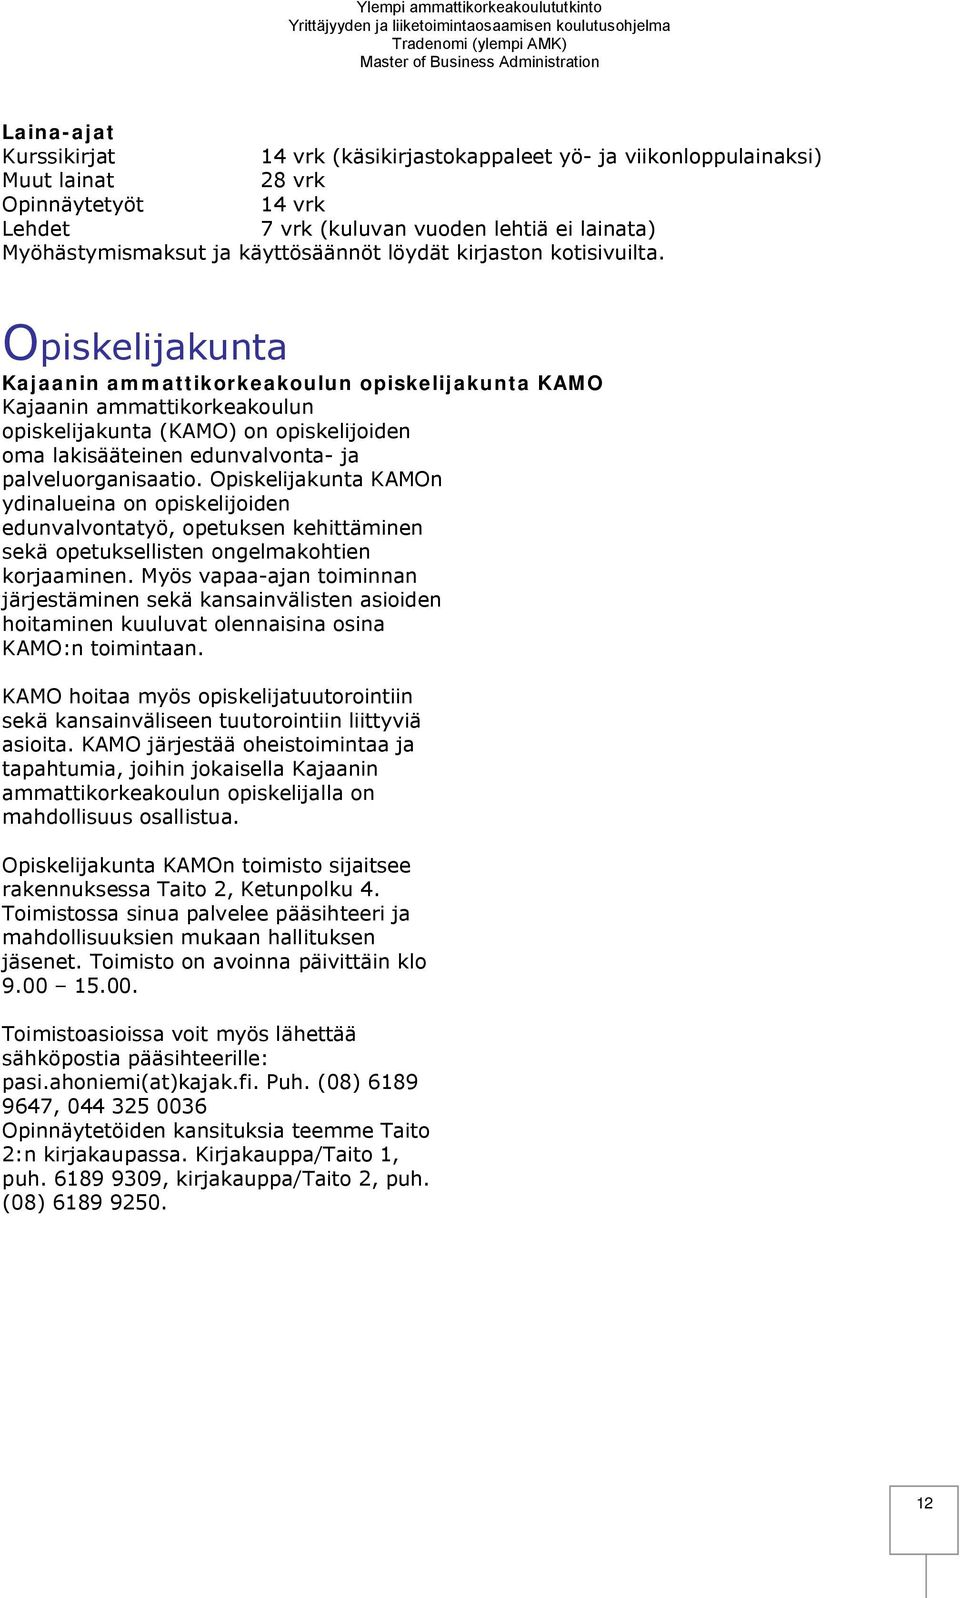 Opiskelijakunta Kajaanin ammattikorkeakoulun opiskelijakunta KAMO Kajaanin ammattikorkeakoulun opiskelijakunta (KAMO) on opiskelijoiden oma lakisääteinen edunvalvonta- ja palveluorganisaatio.